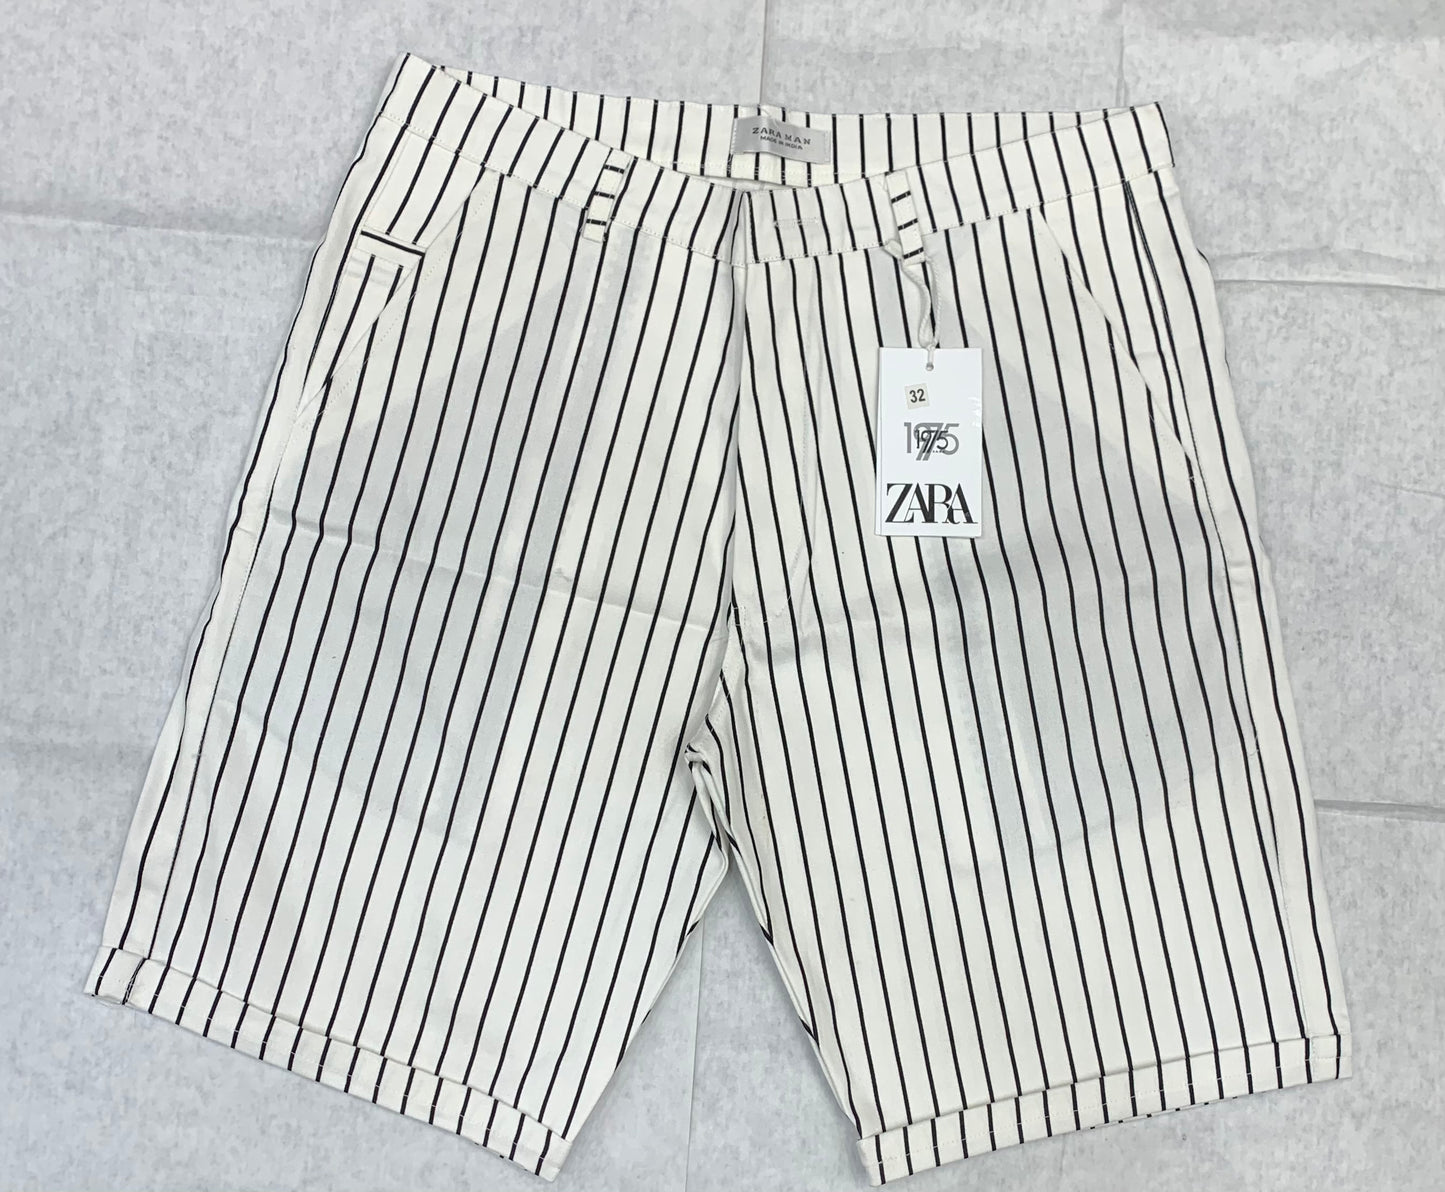 Zr Raz Black White Colour Small Line Design Denim Men Shorts 93306